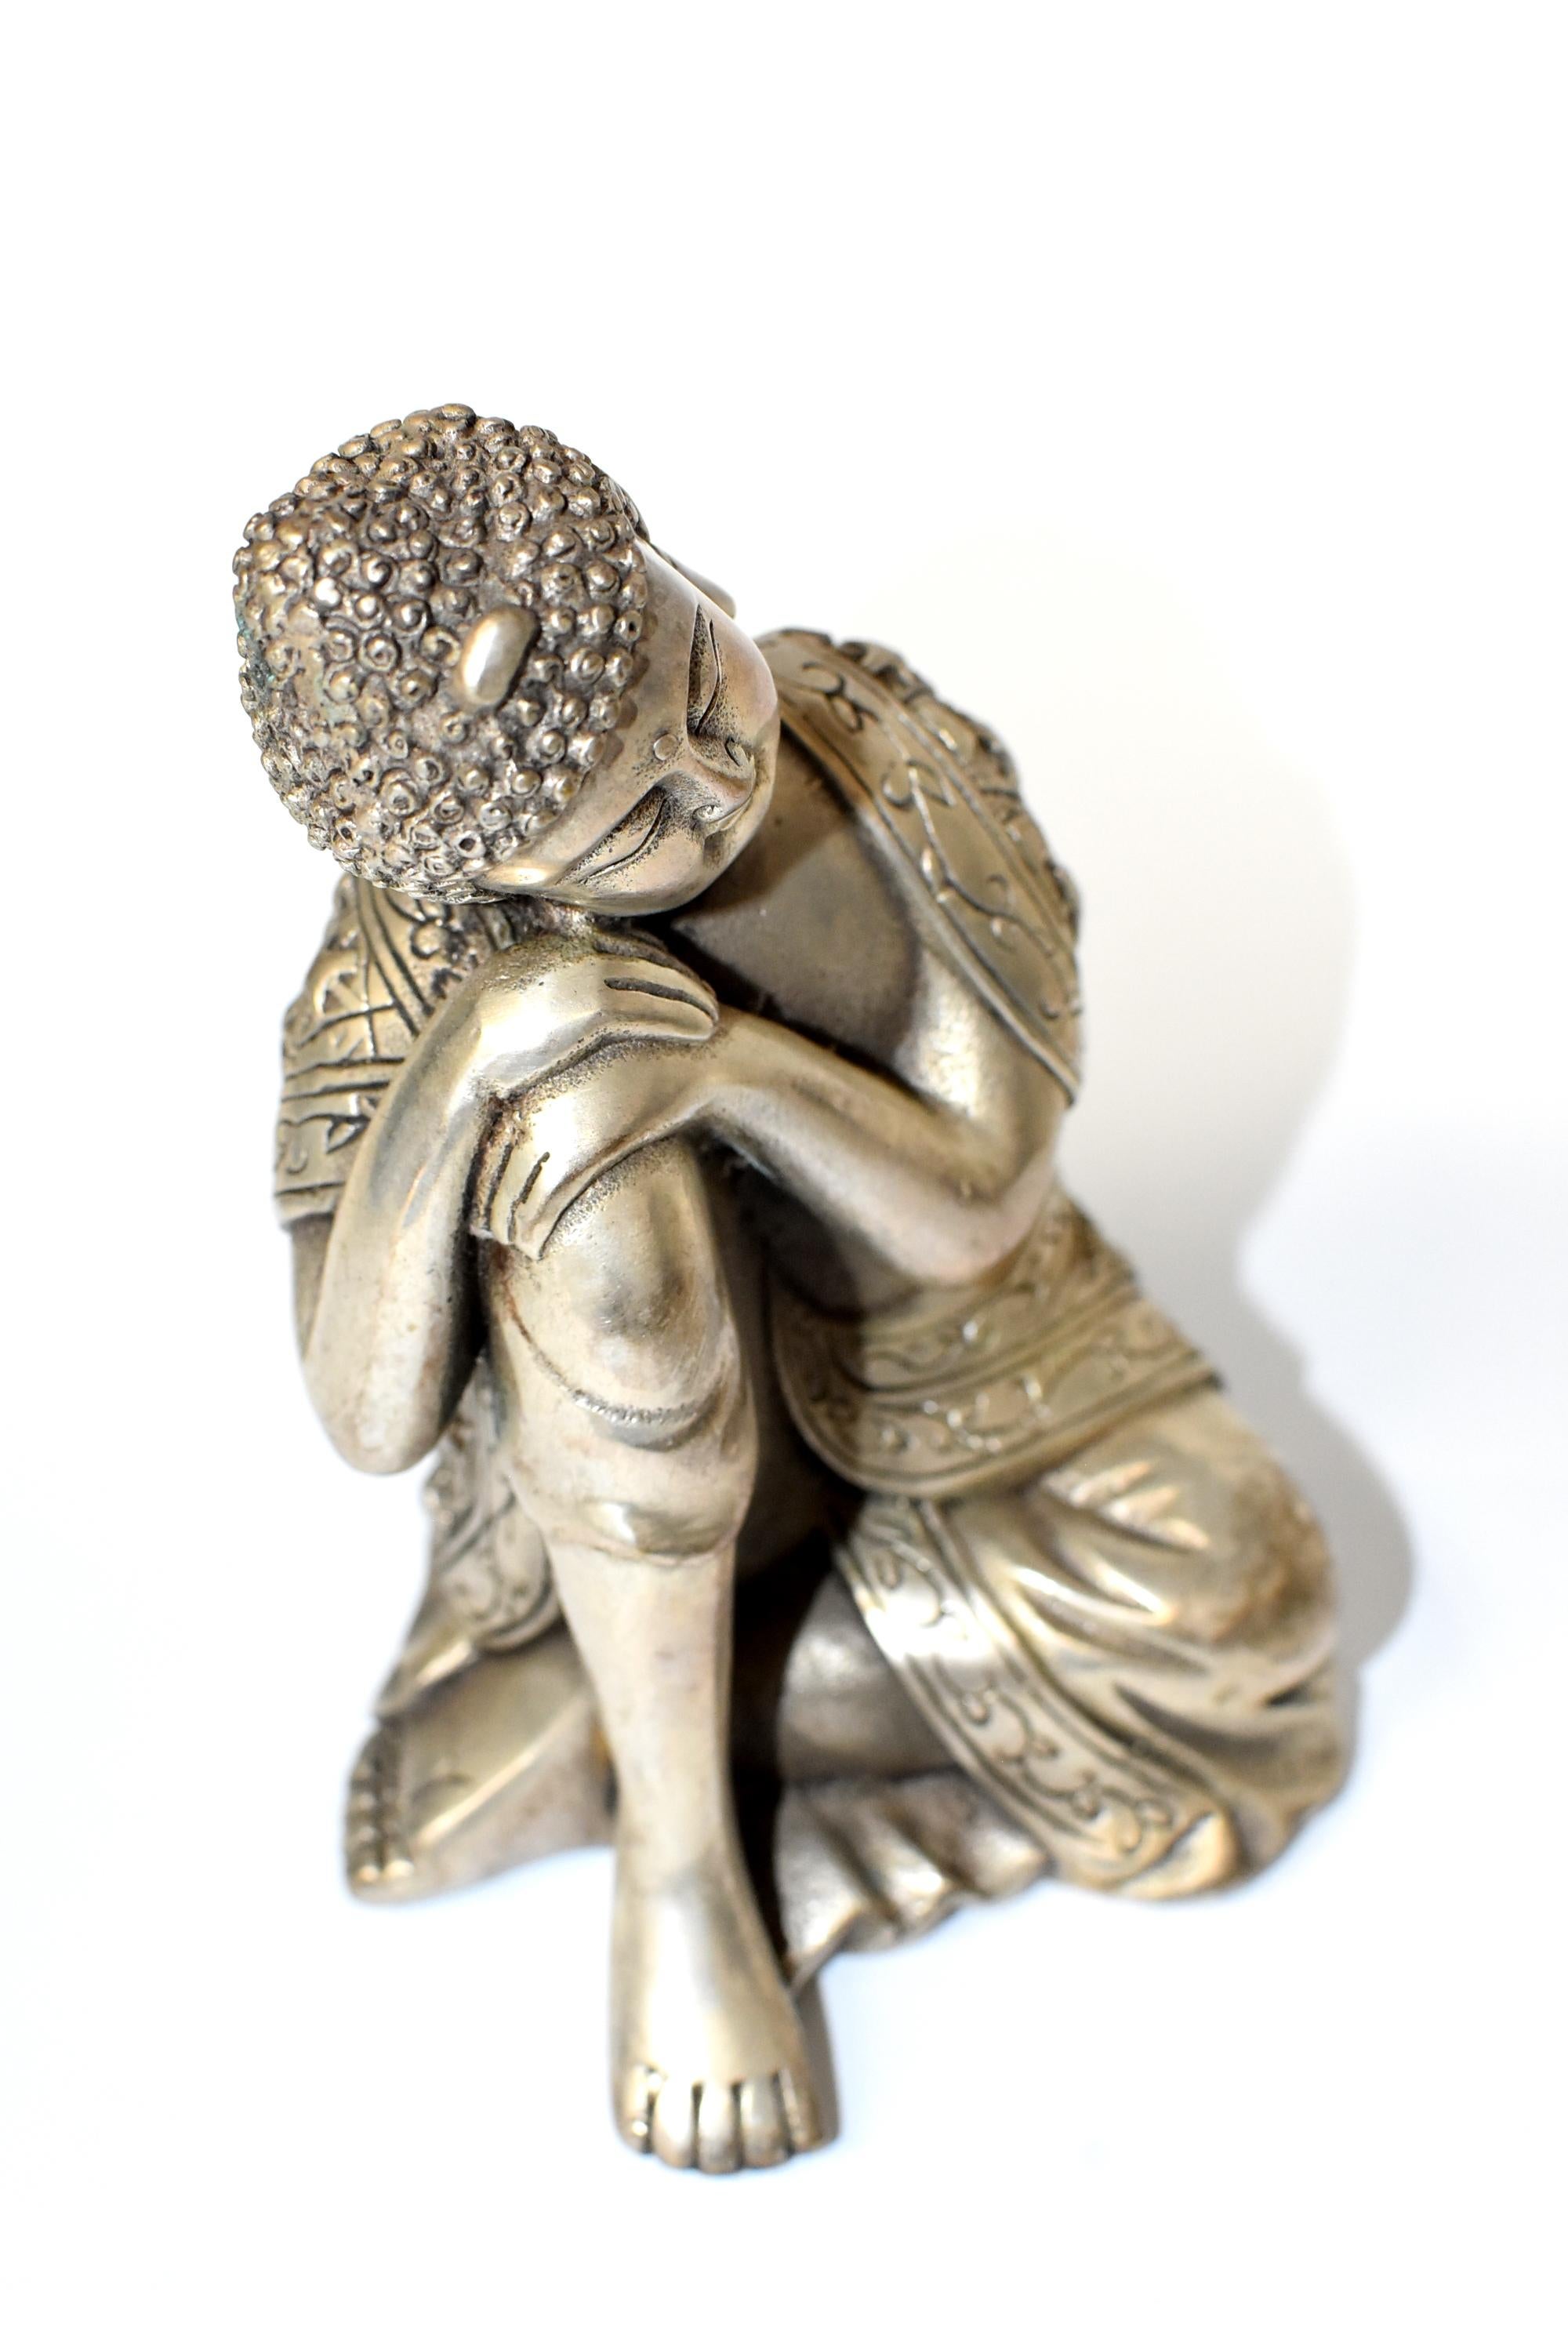 Silvered Brass Buddha Statue, a Thinking Buddha 1